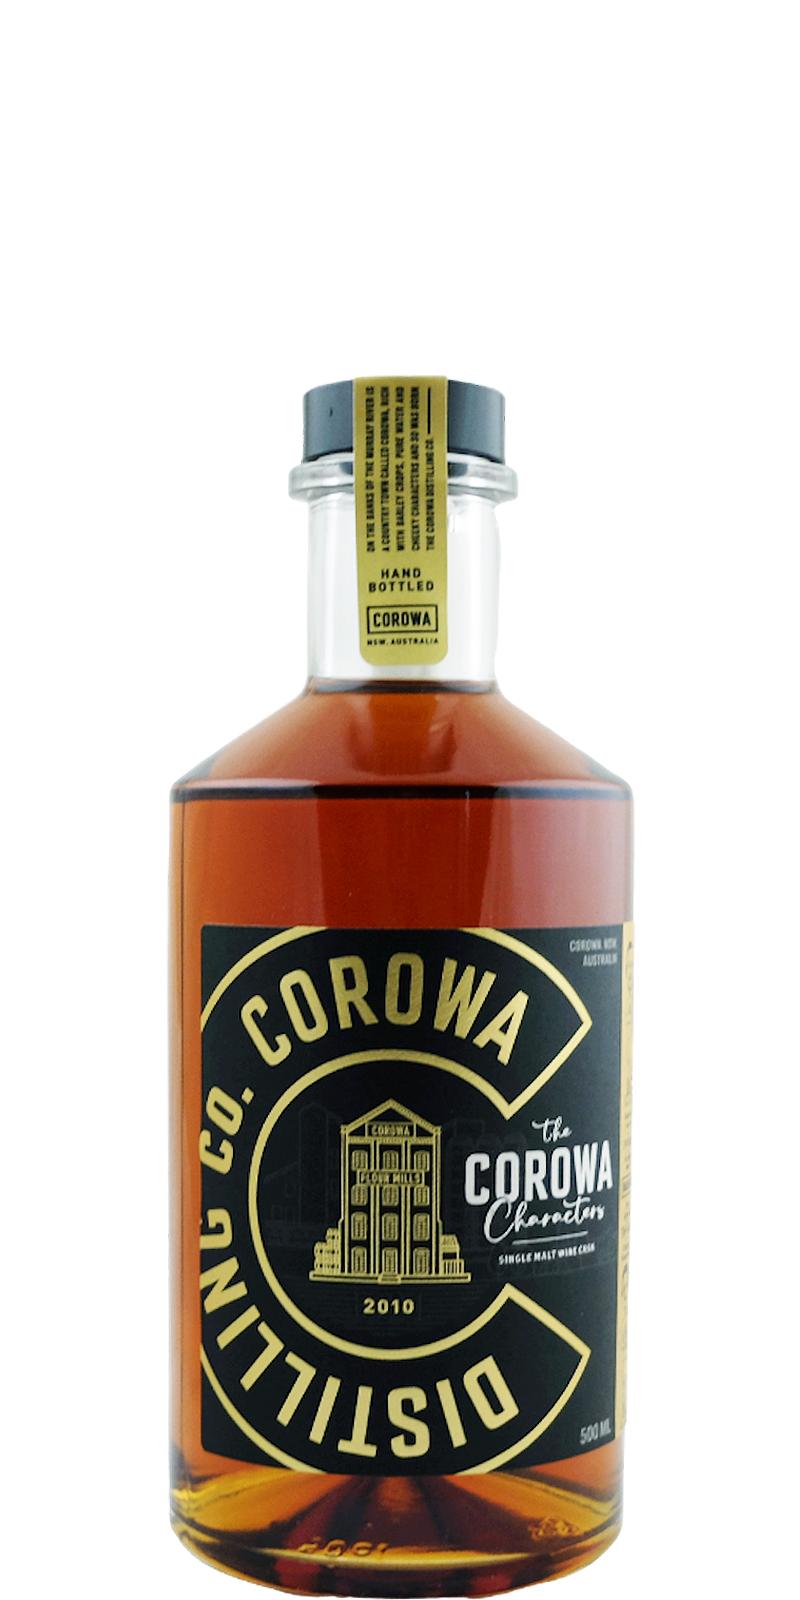 Corowa Distilling Co. The Corowa Characters